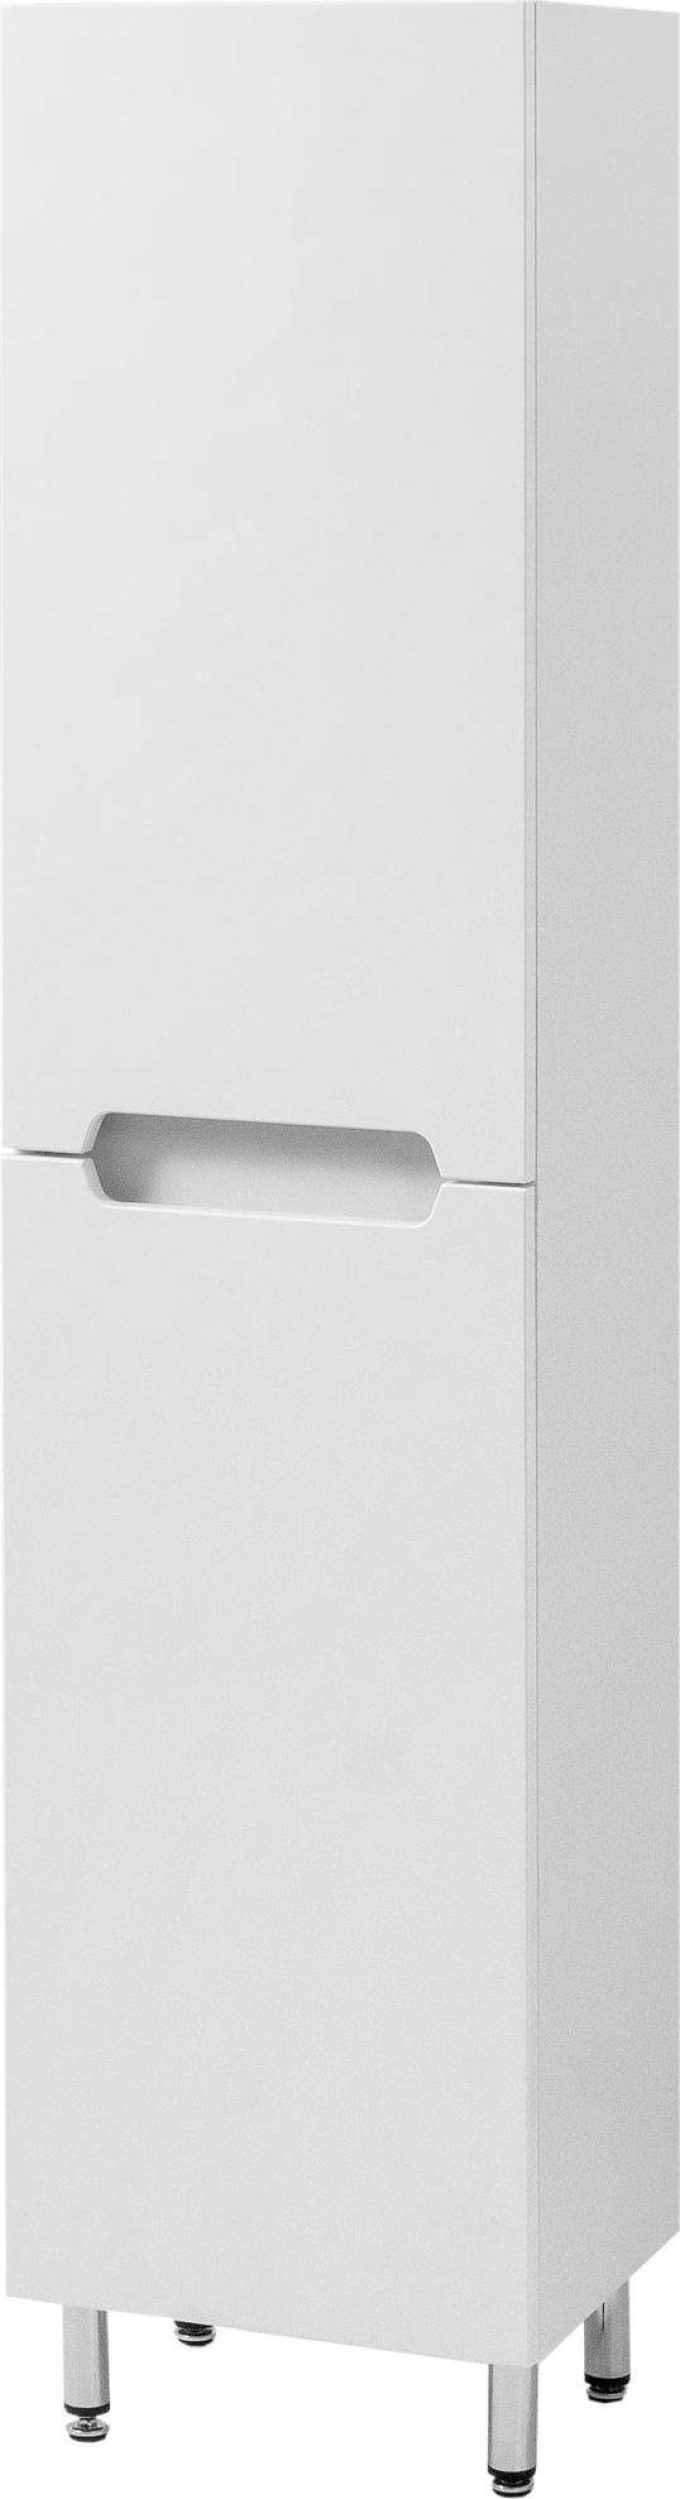 Vysoká koupelnová skříňka Amelie 35 s praktickým úložným prostorem v bílé barvě a moderním provedením